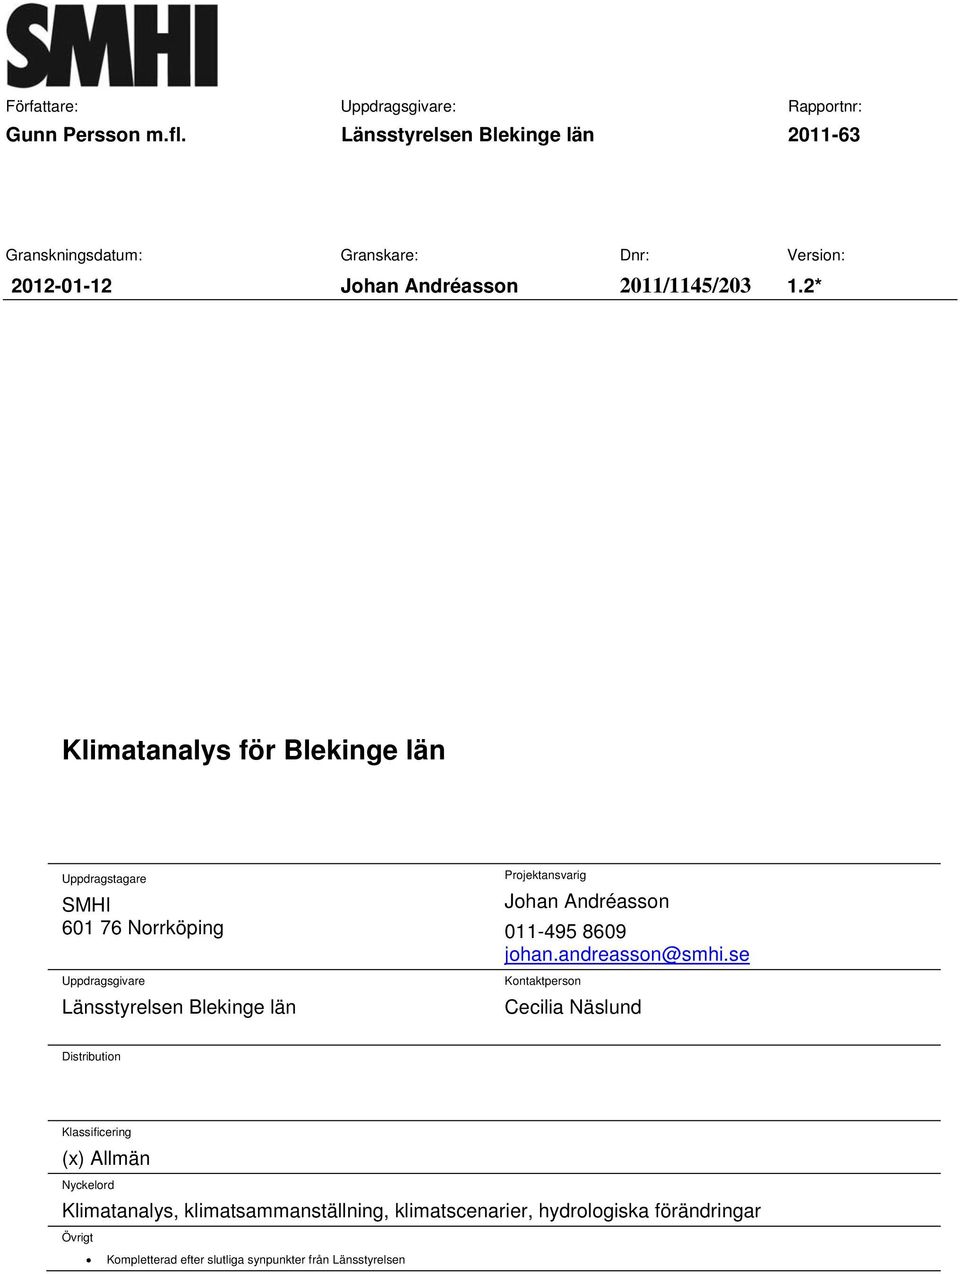 2* Klimatanalys för Blekinge län Uppdragstagare SMHI 601 76 Norrköping Uppdragsgivare Länsstyrelsen Blekinge län Projektansvarig Johan Andréasson